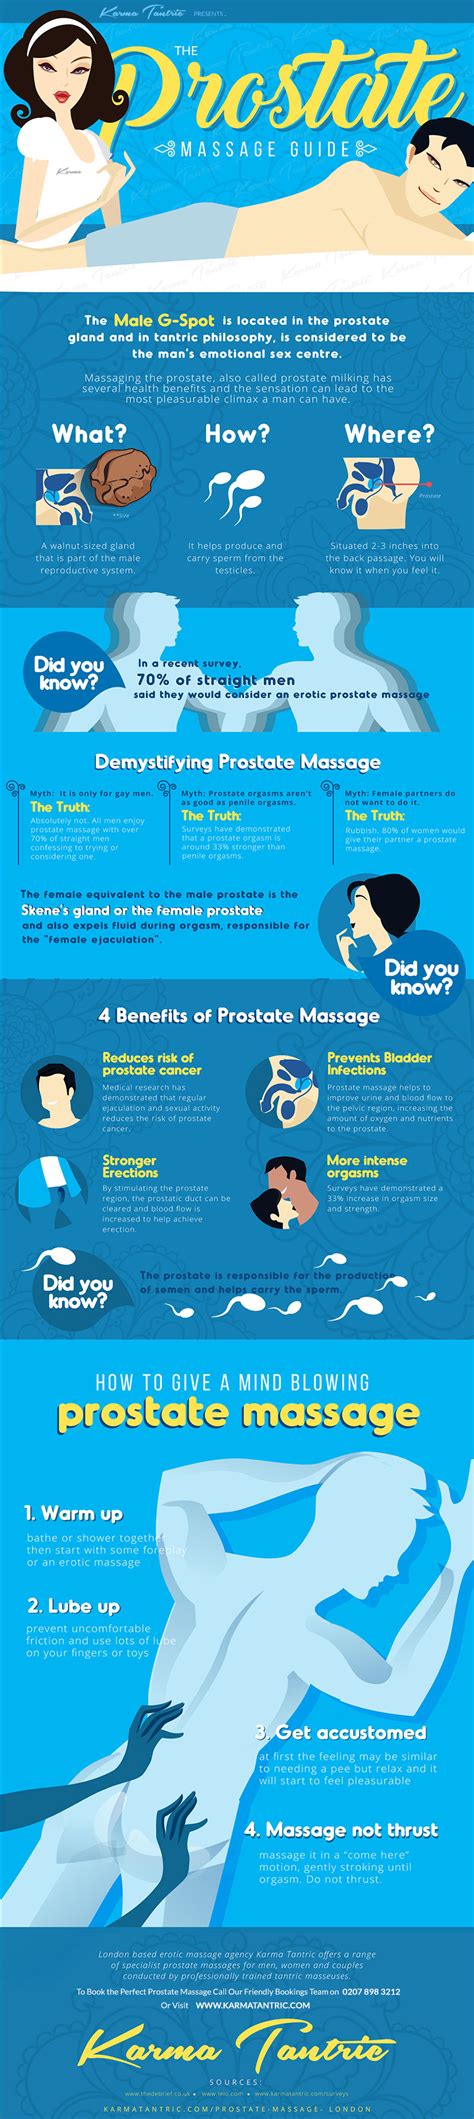 Best Tips On How To Do A Prostate Massage Properly Kienitvc Ac Ke